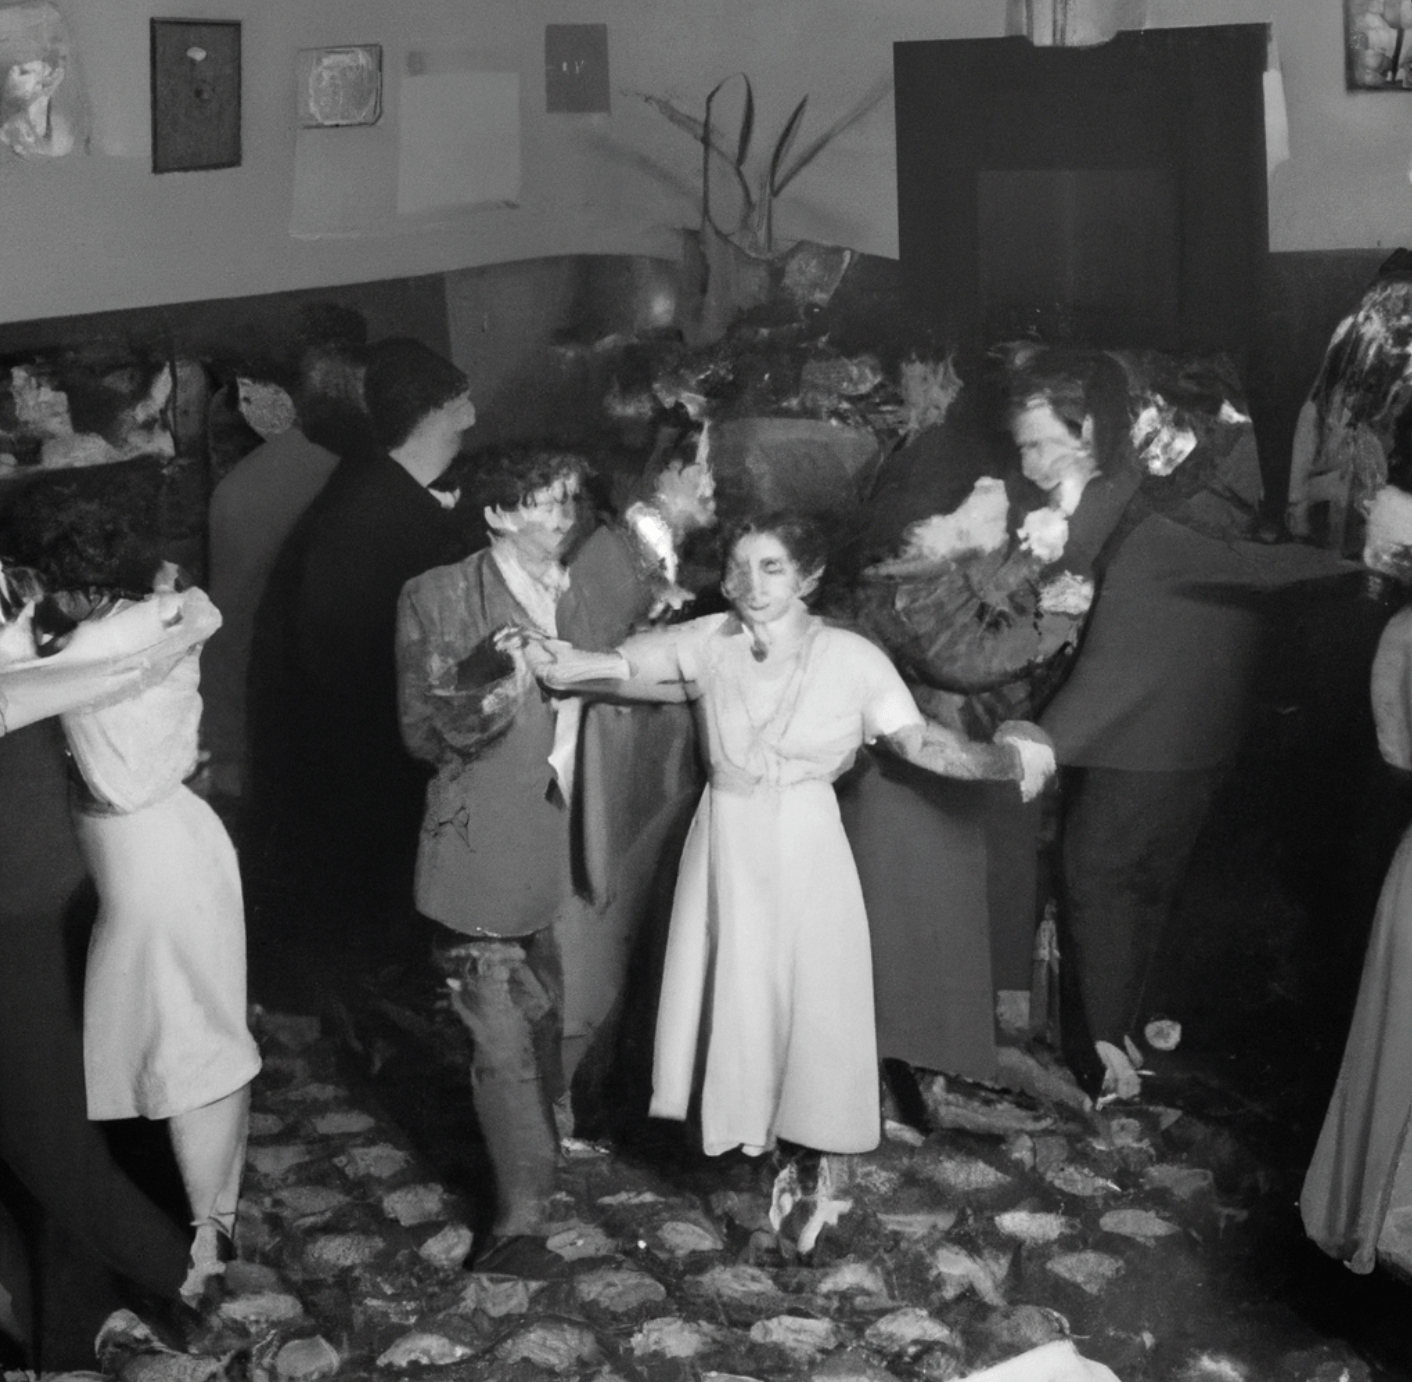 una imagen generada en blanco y negro de gente bailando